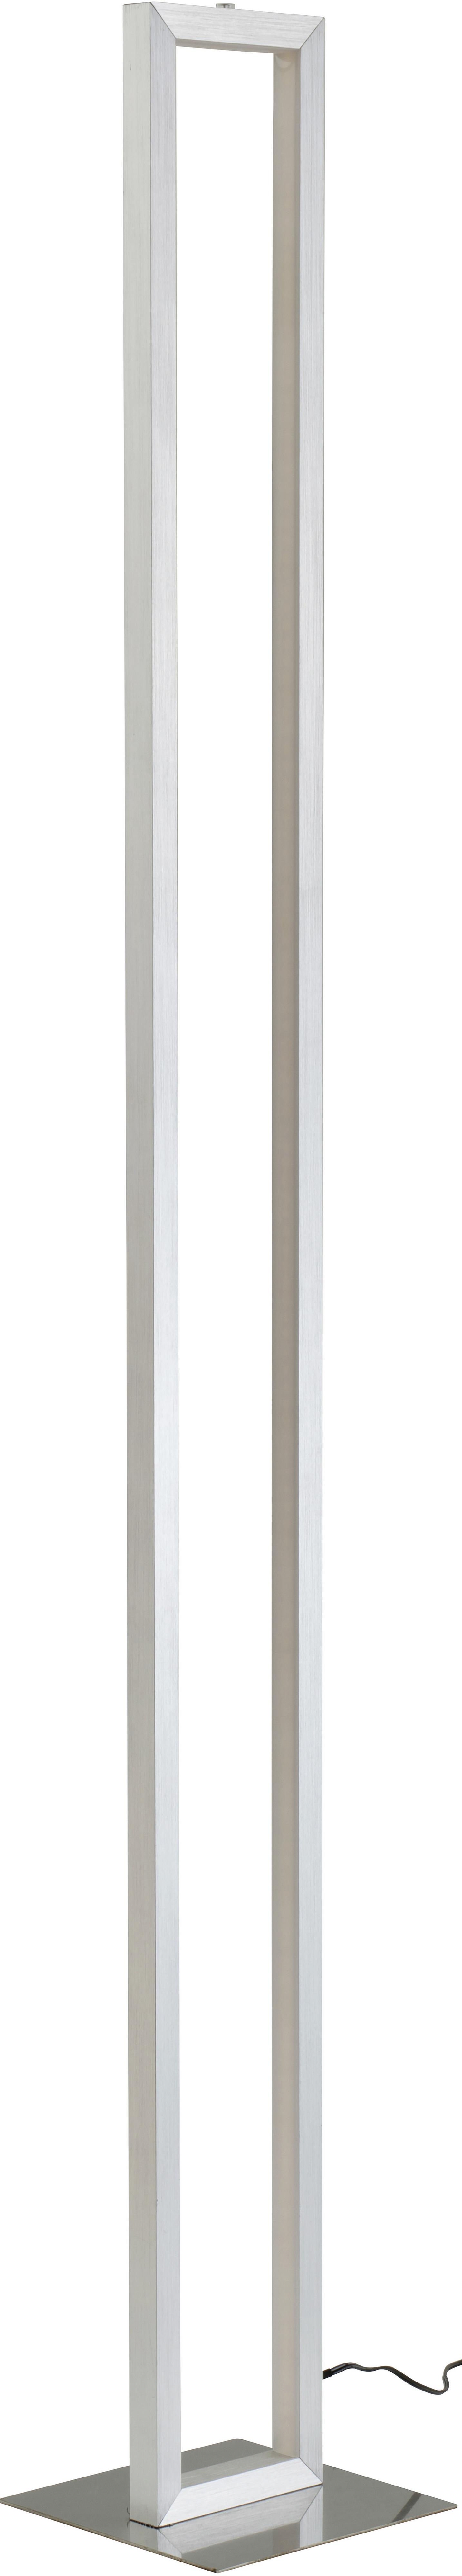 LED Állólámpa Erion - Nikkel/Fehér, konvencionális, Műanyag/Fém (16/16/120cm) - Premium Living